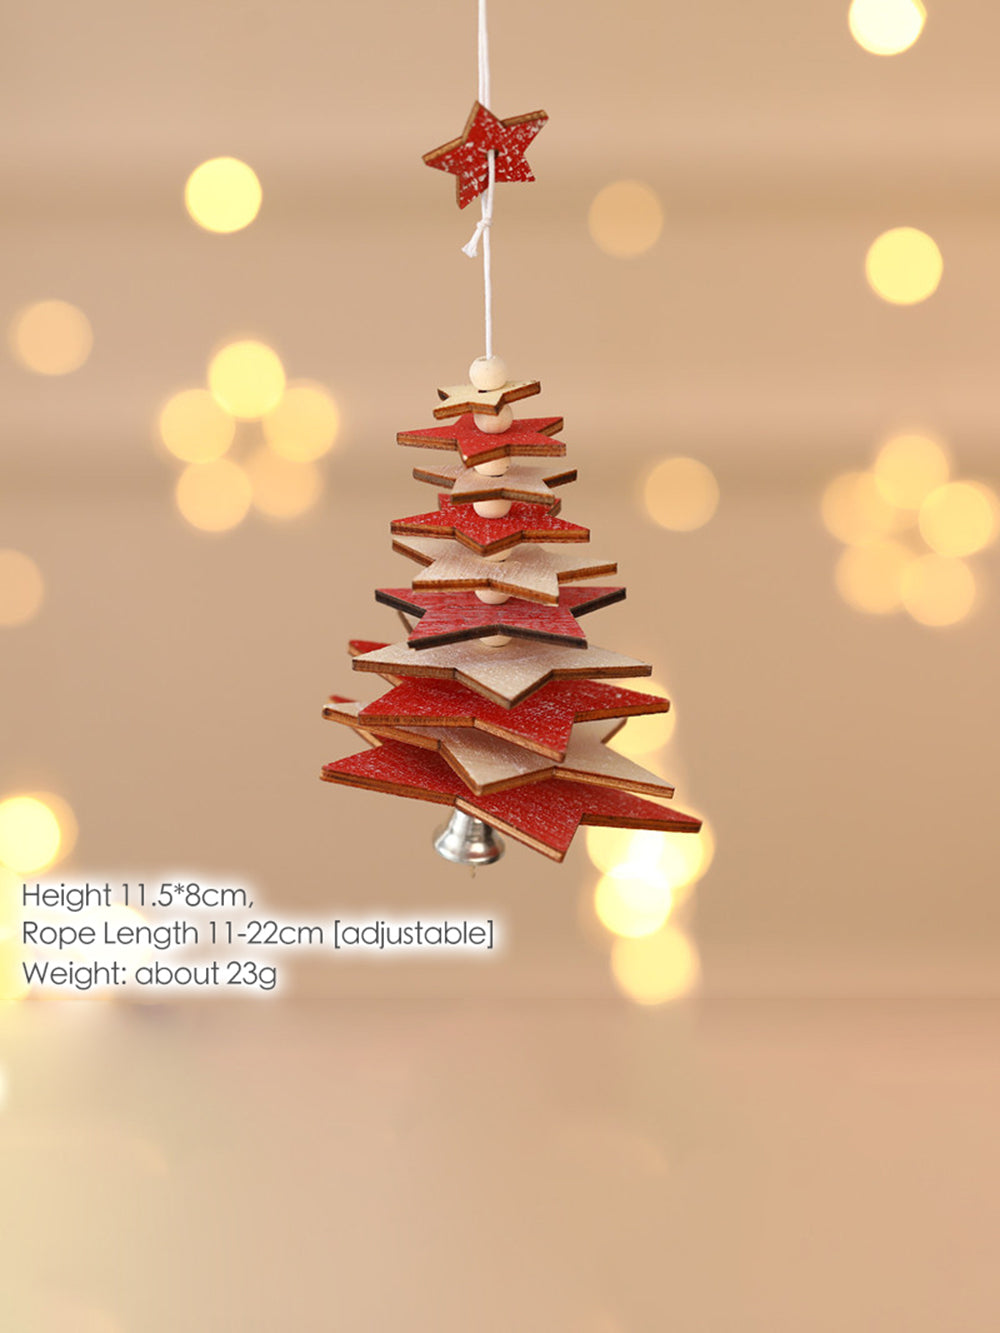 Copo de nieve estrella de cinco puntas navideño con colgante de campana